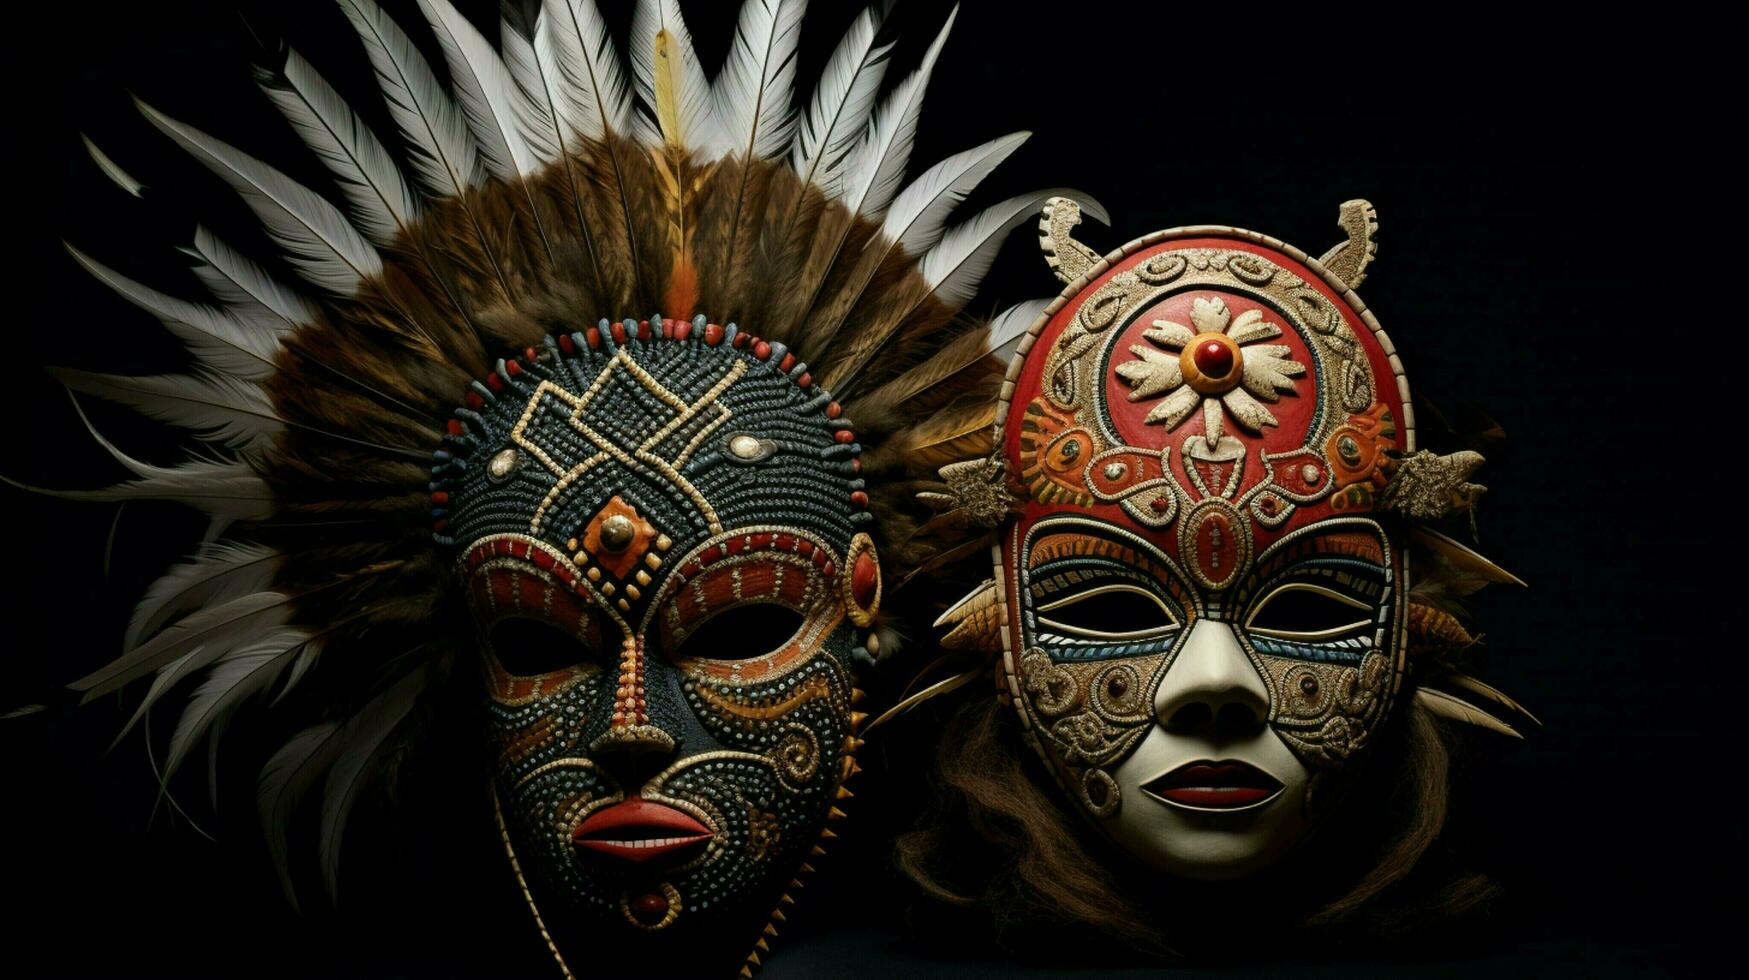 indigeno culture celebrare tradizione con ornato maschere foto